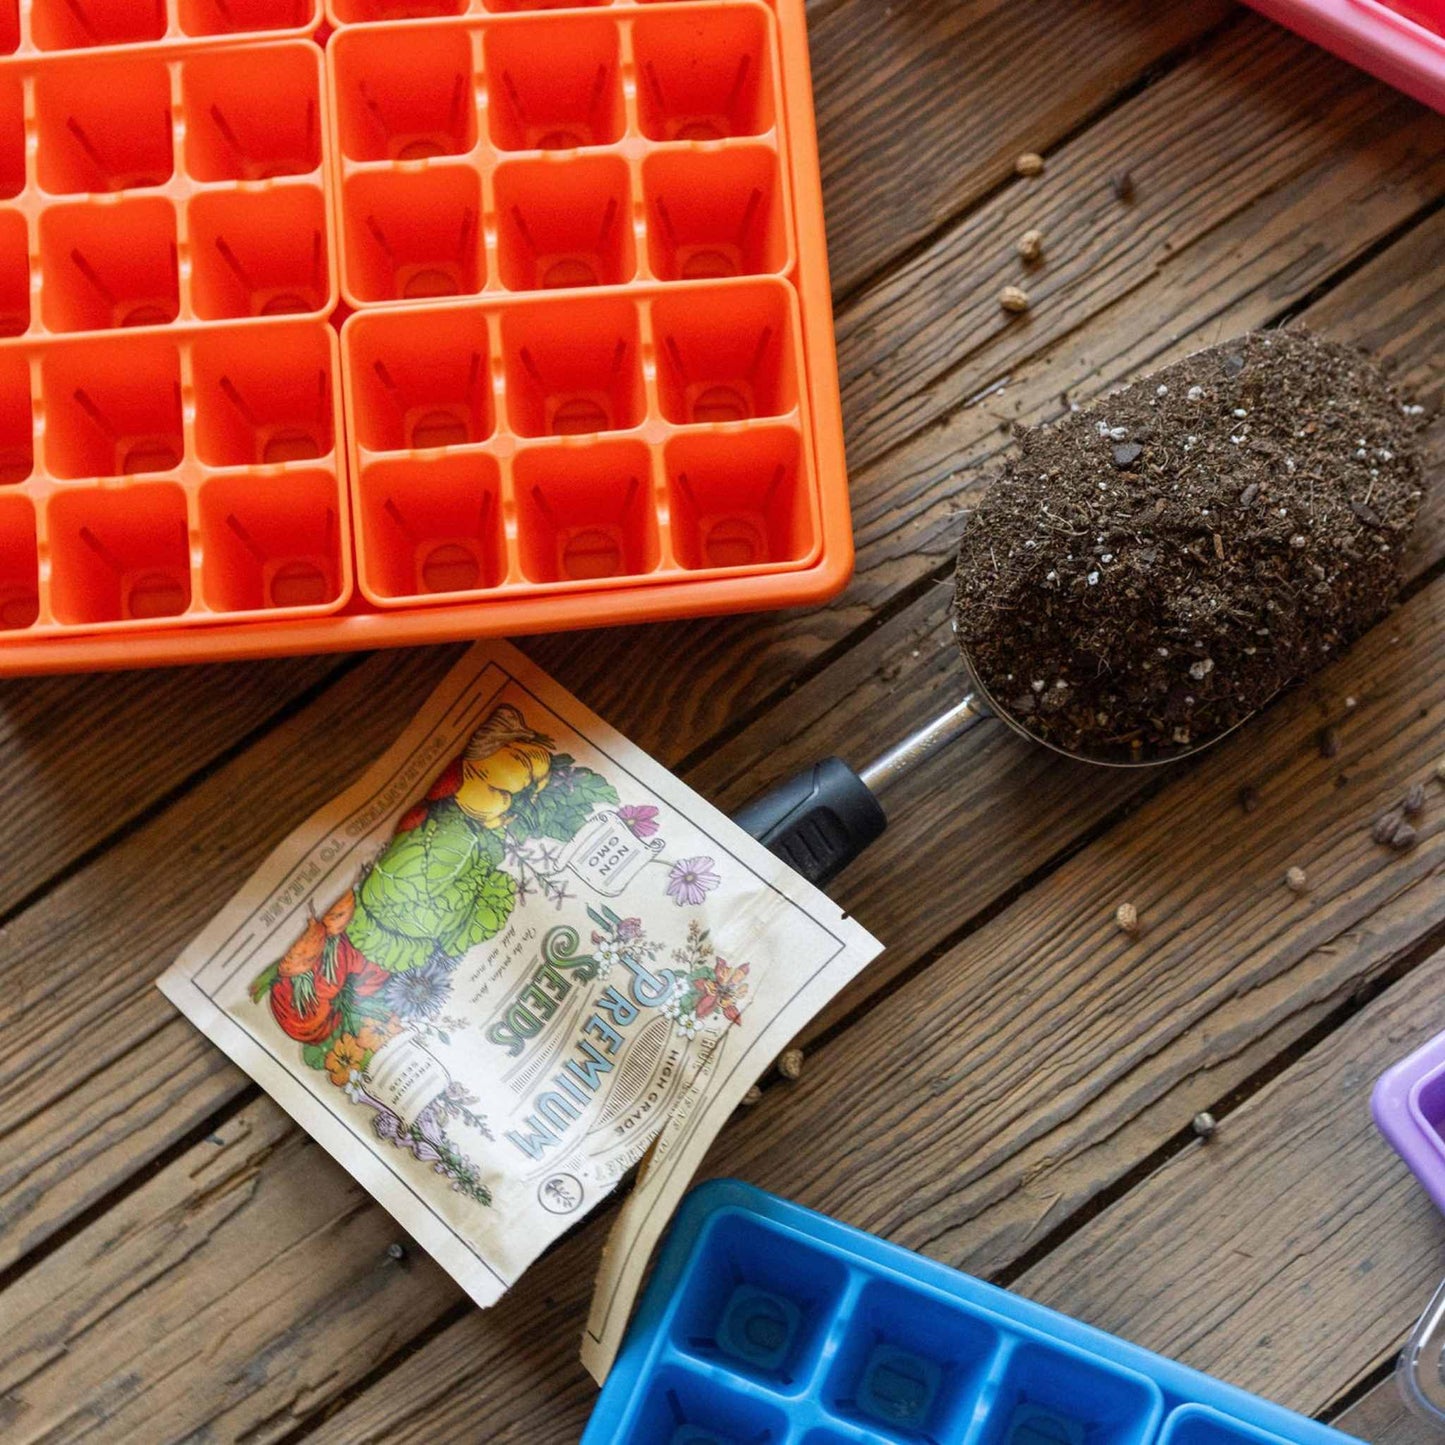 1010 Seed Starter Kit for Backyard Gardeners